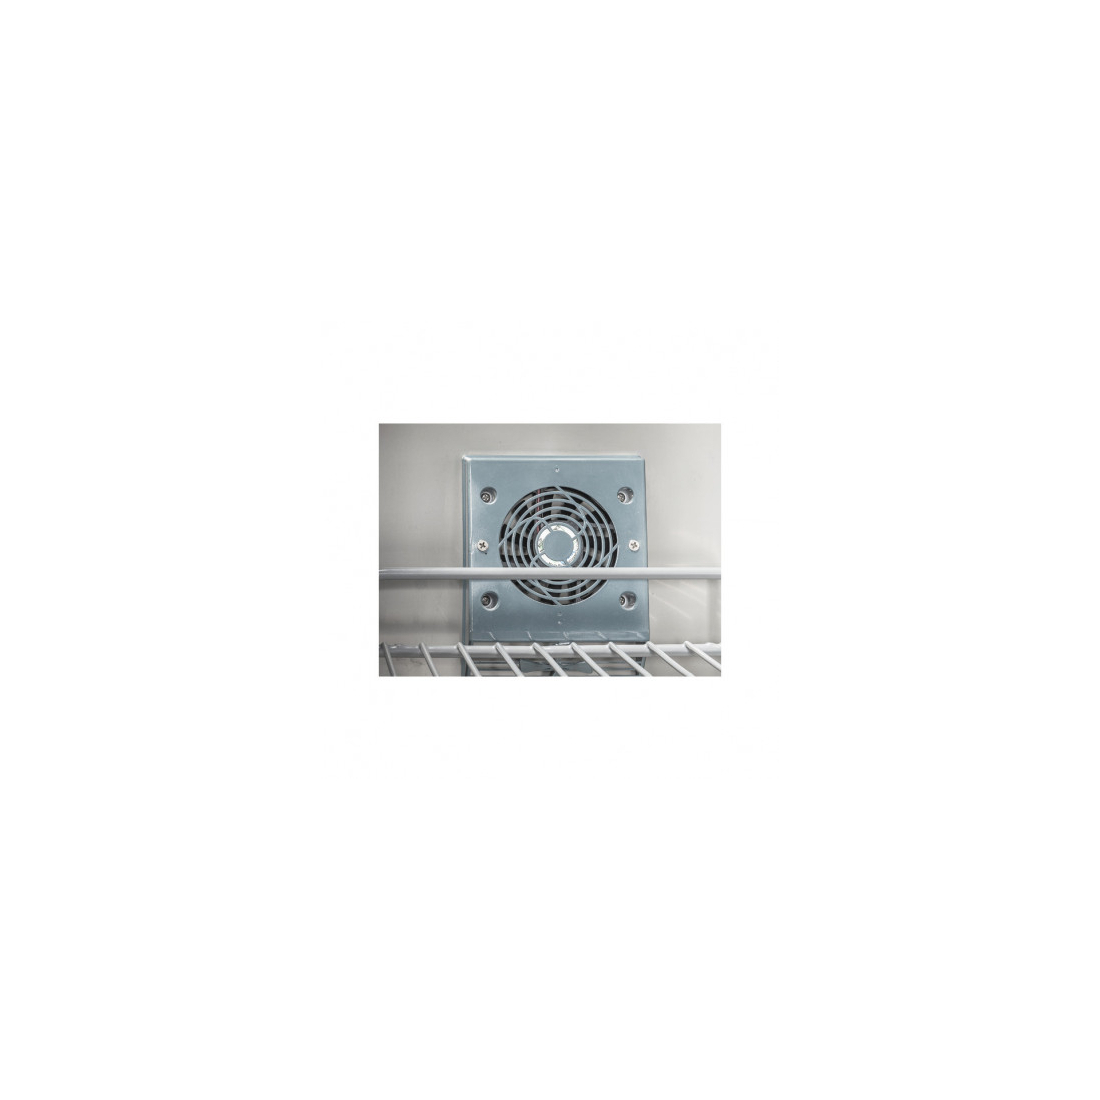 ثلاجة أفقية 2 درج سعة 100لتر عرض 45 سم ,CRD45, من كول هيد|mkayn|مكاين